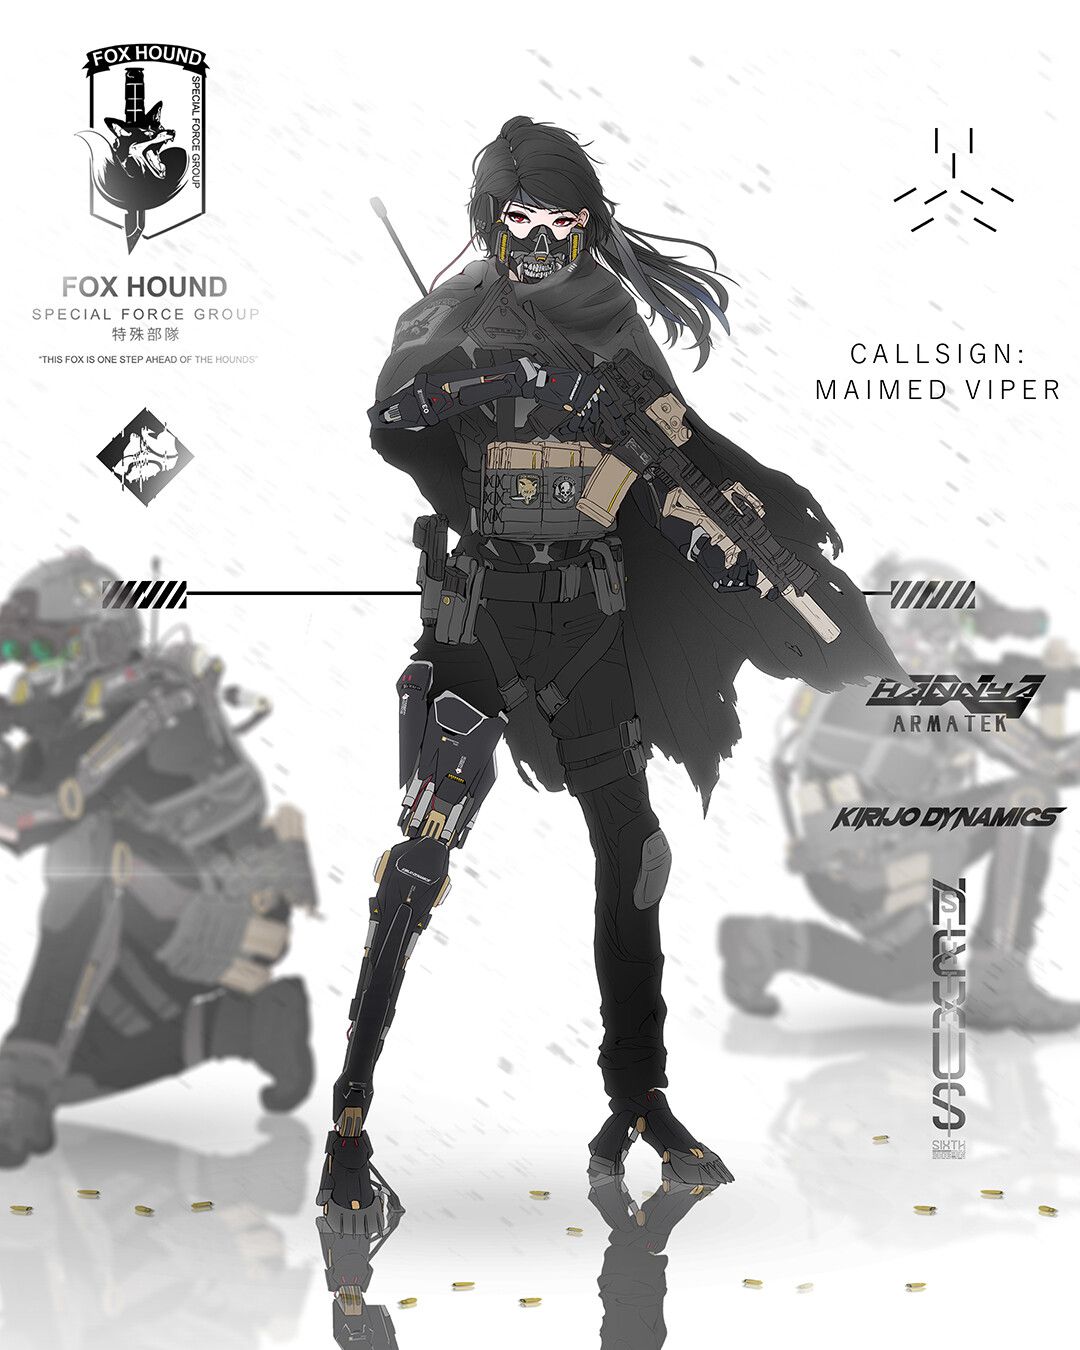 Cyberpunk fan art of Metal Gear